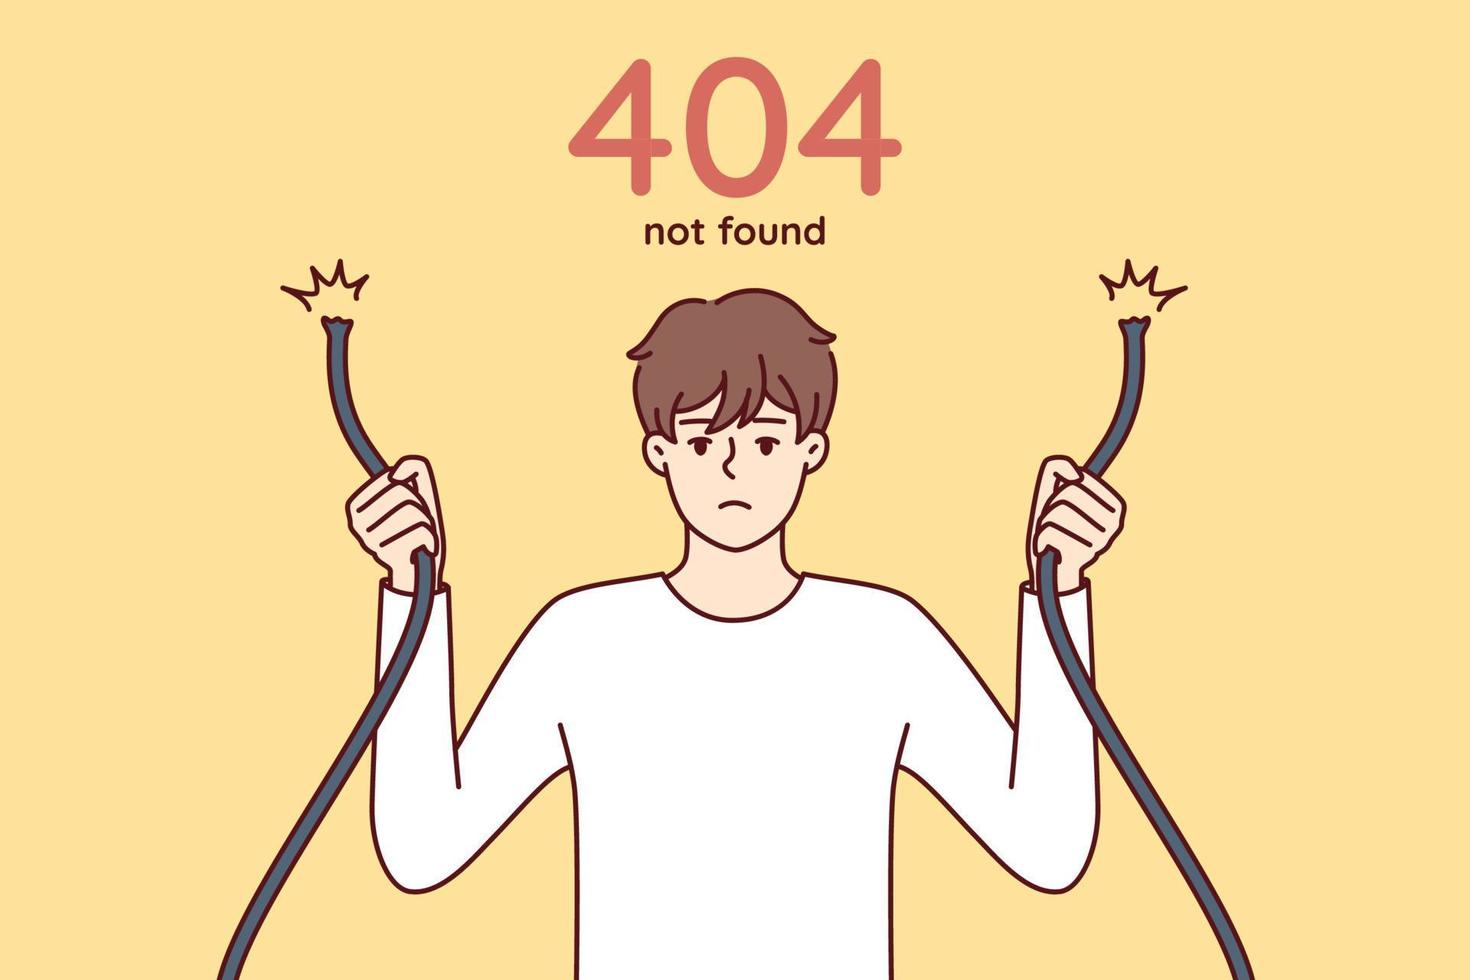 eror 404 con un hombre triste sosteniendo un cable roto en las manos y teniendo problemas para acceder al sitio de Internet. tipo con cable de red dañado que simboliza un error web al intentar acceder al servidor. imagen vectorial plana vector